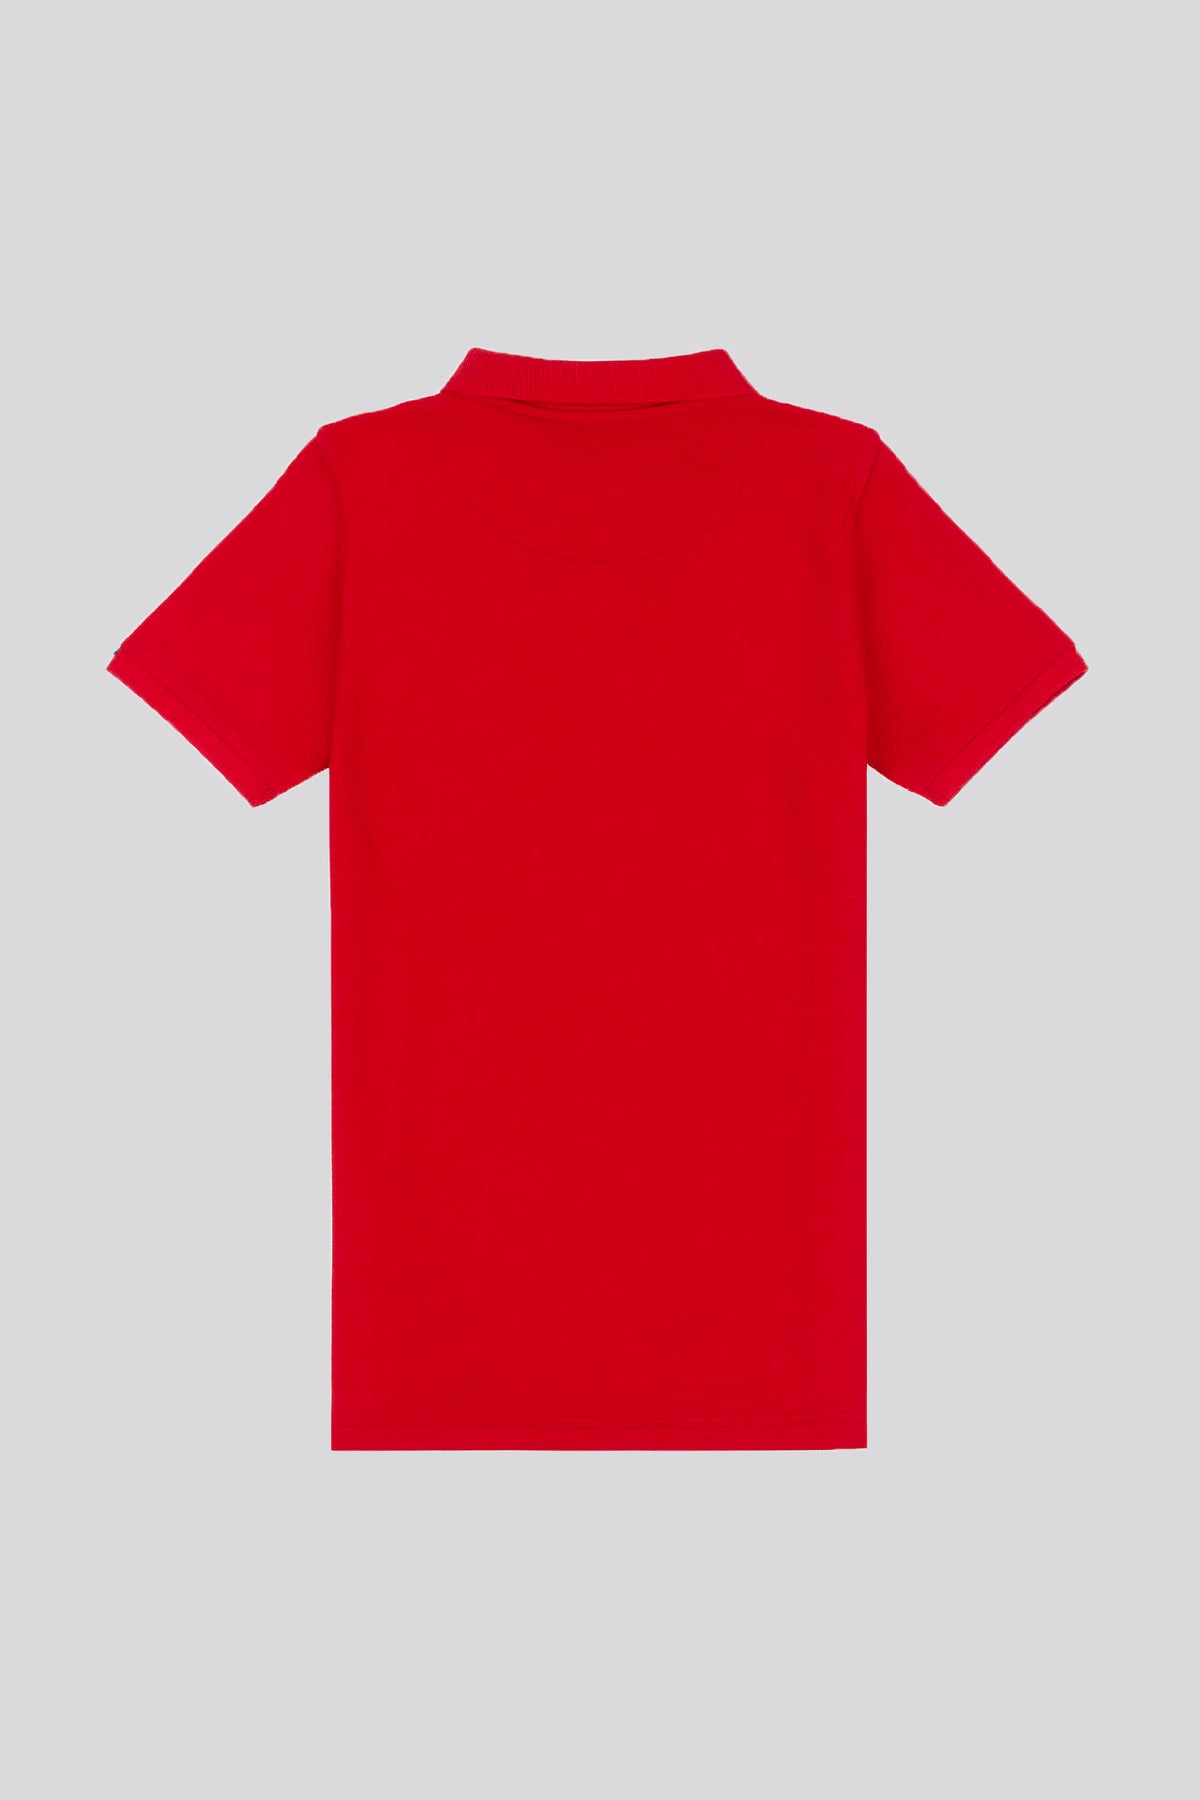 Boys Pique Polo Shirt in Haute Red